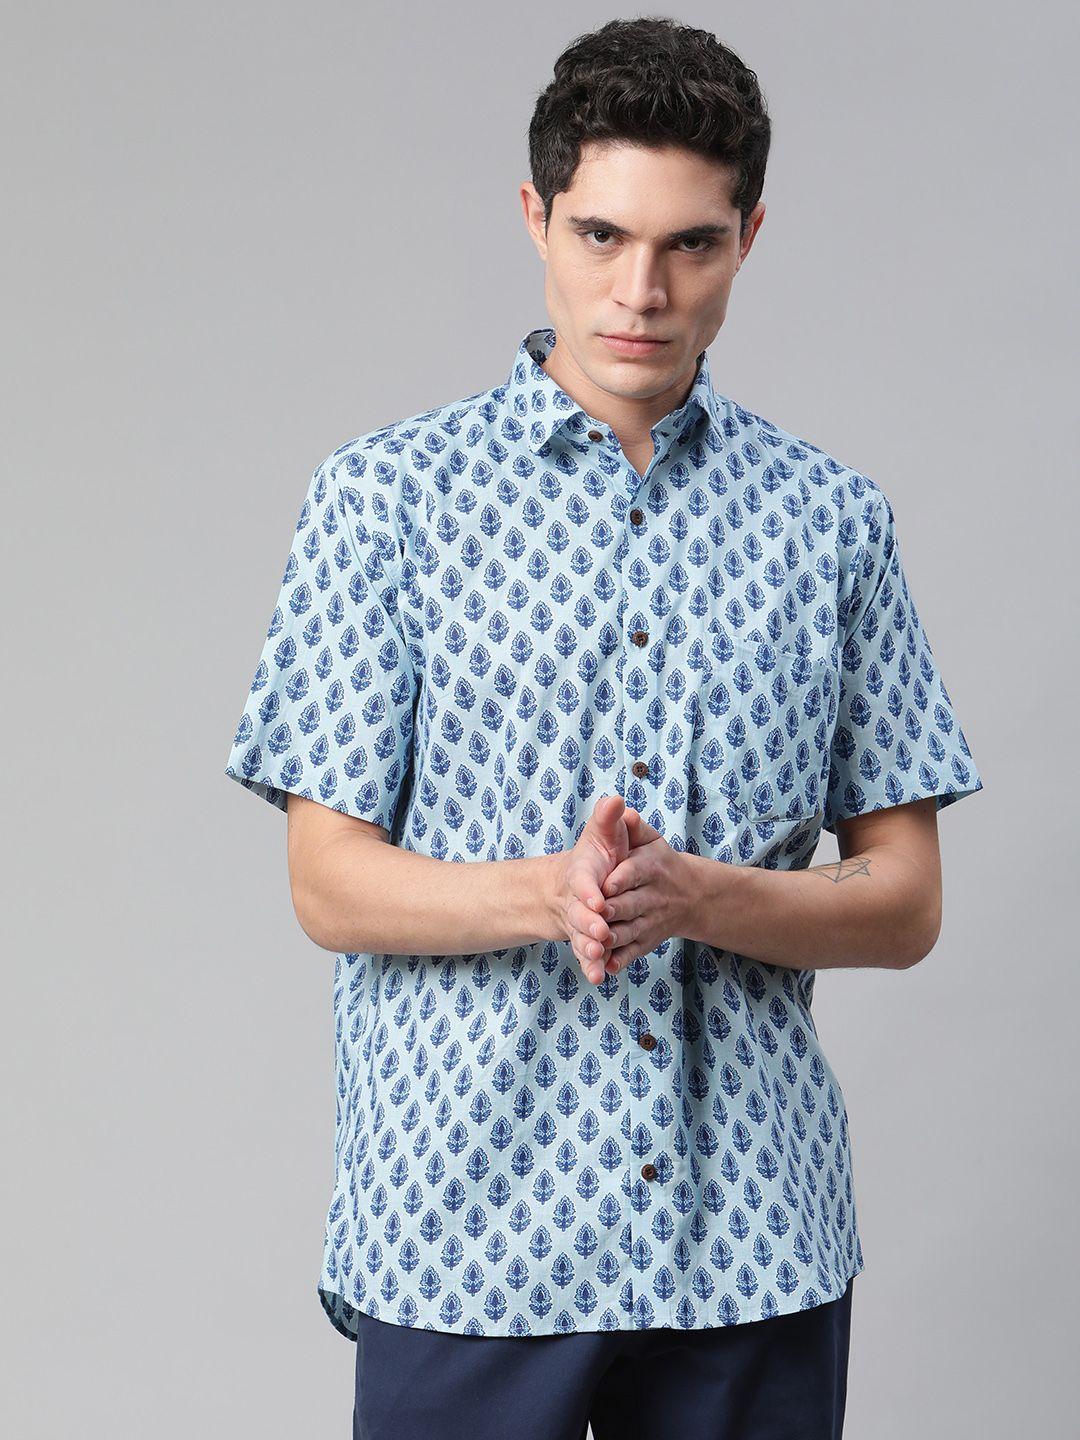 millennial men blue comfort printed casual shirt